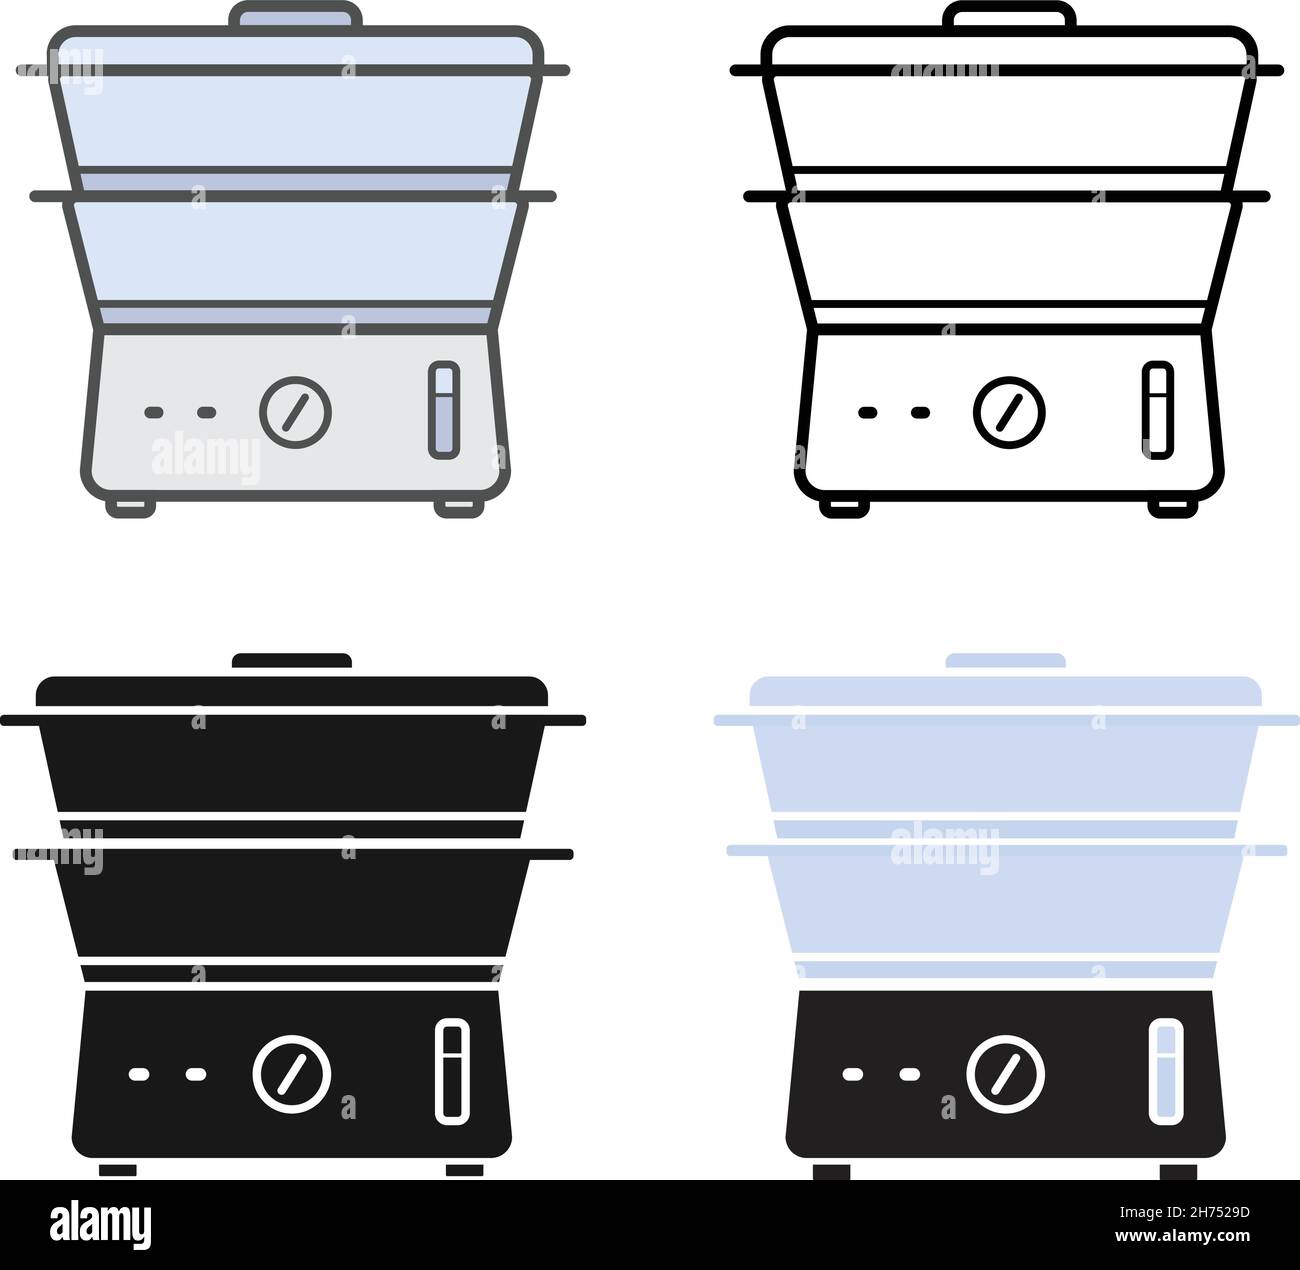 Icônes du cuiseur vapeur électrique de cuisine Illustration de Vecteur